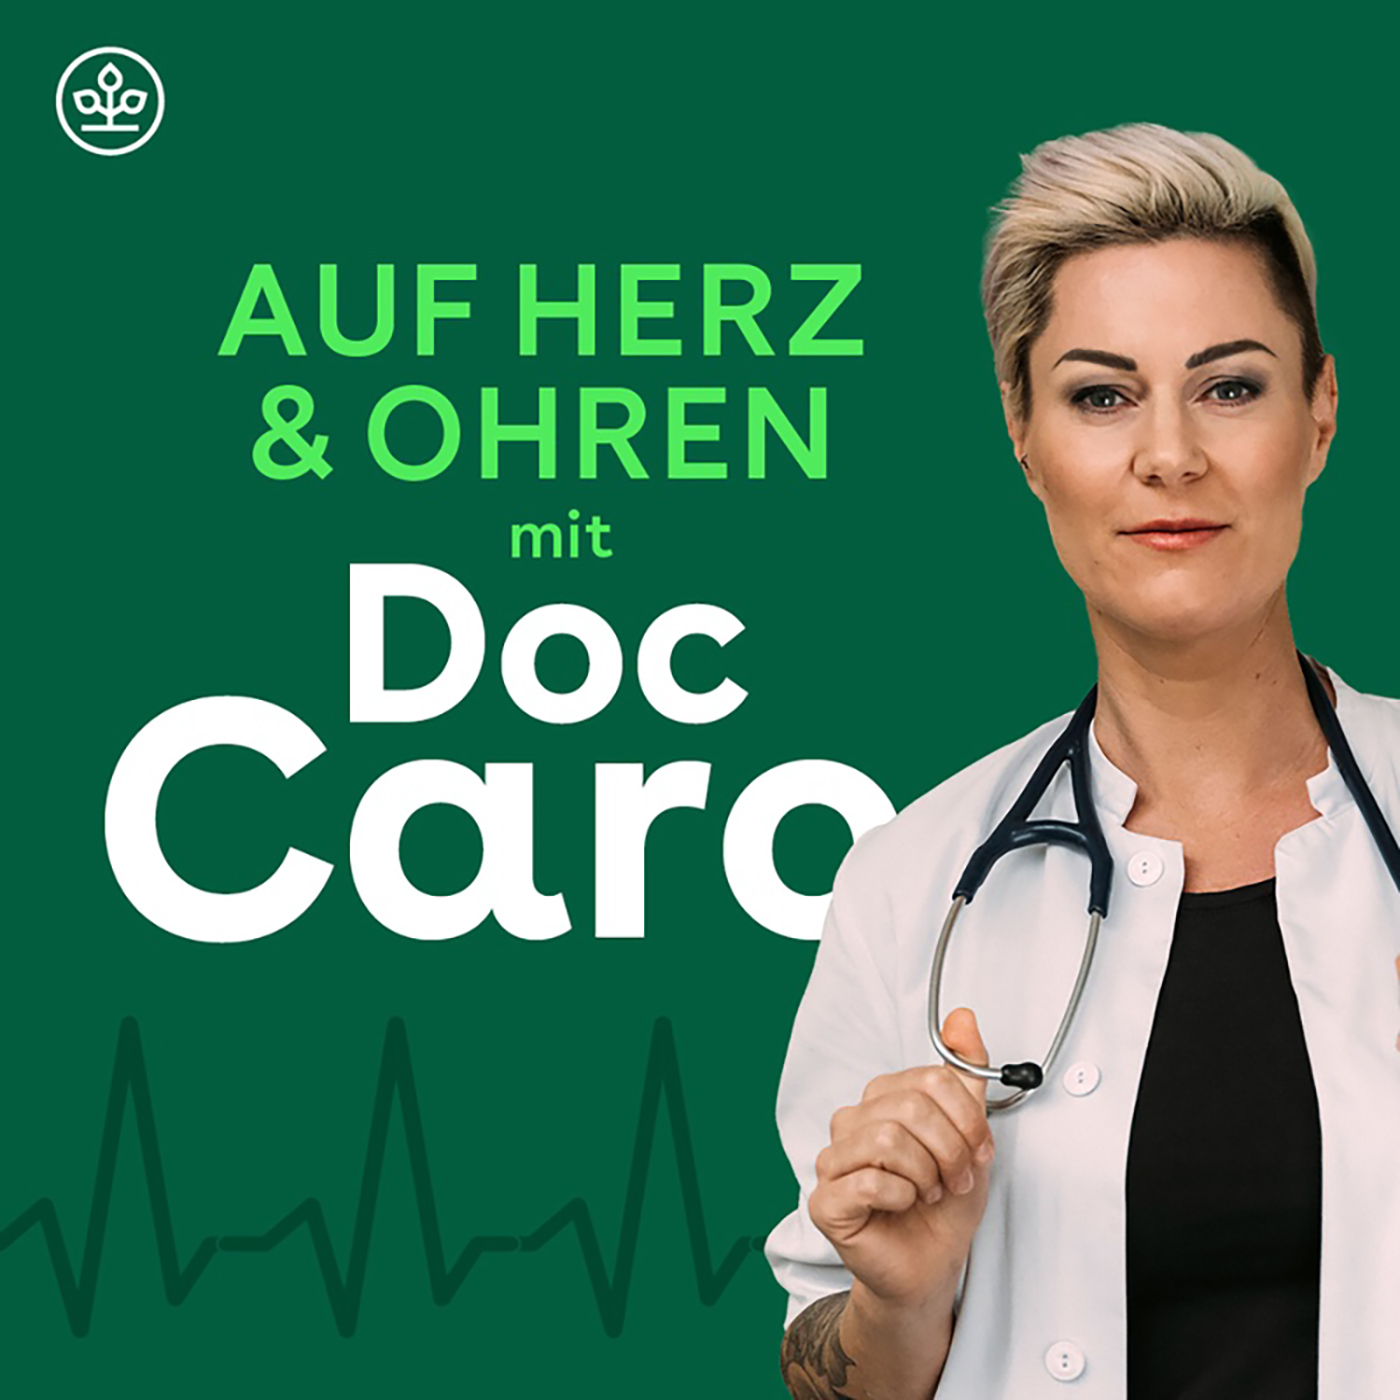 Auf Herz & Ohren mit Doc Caro – Wer braucht Palliativmedizin?